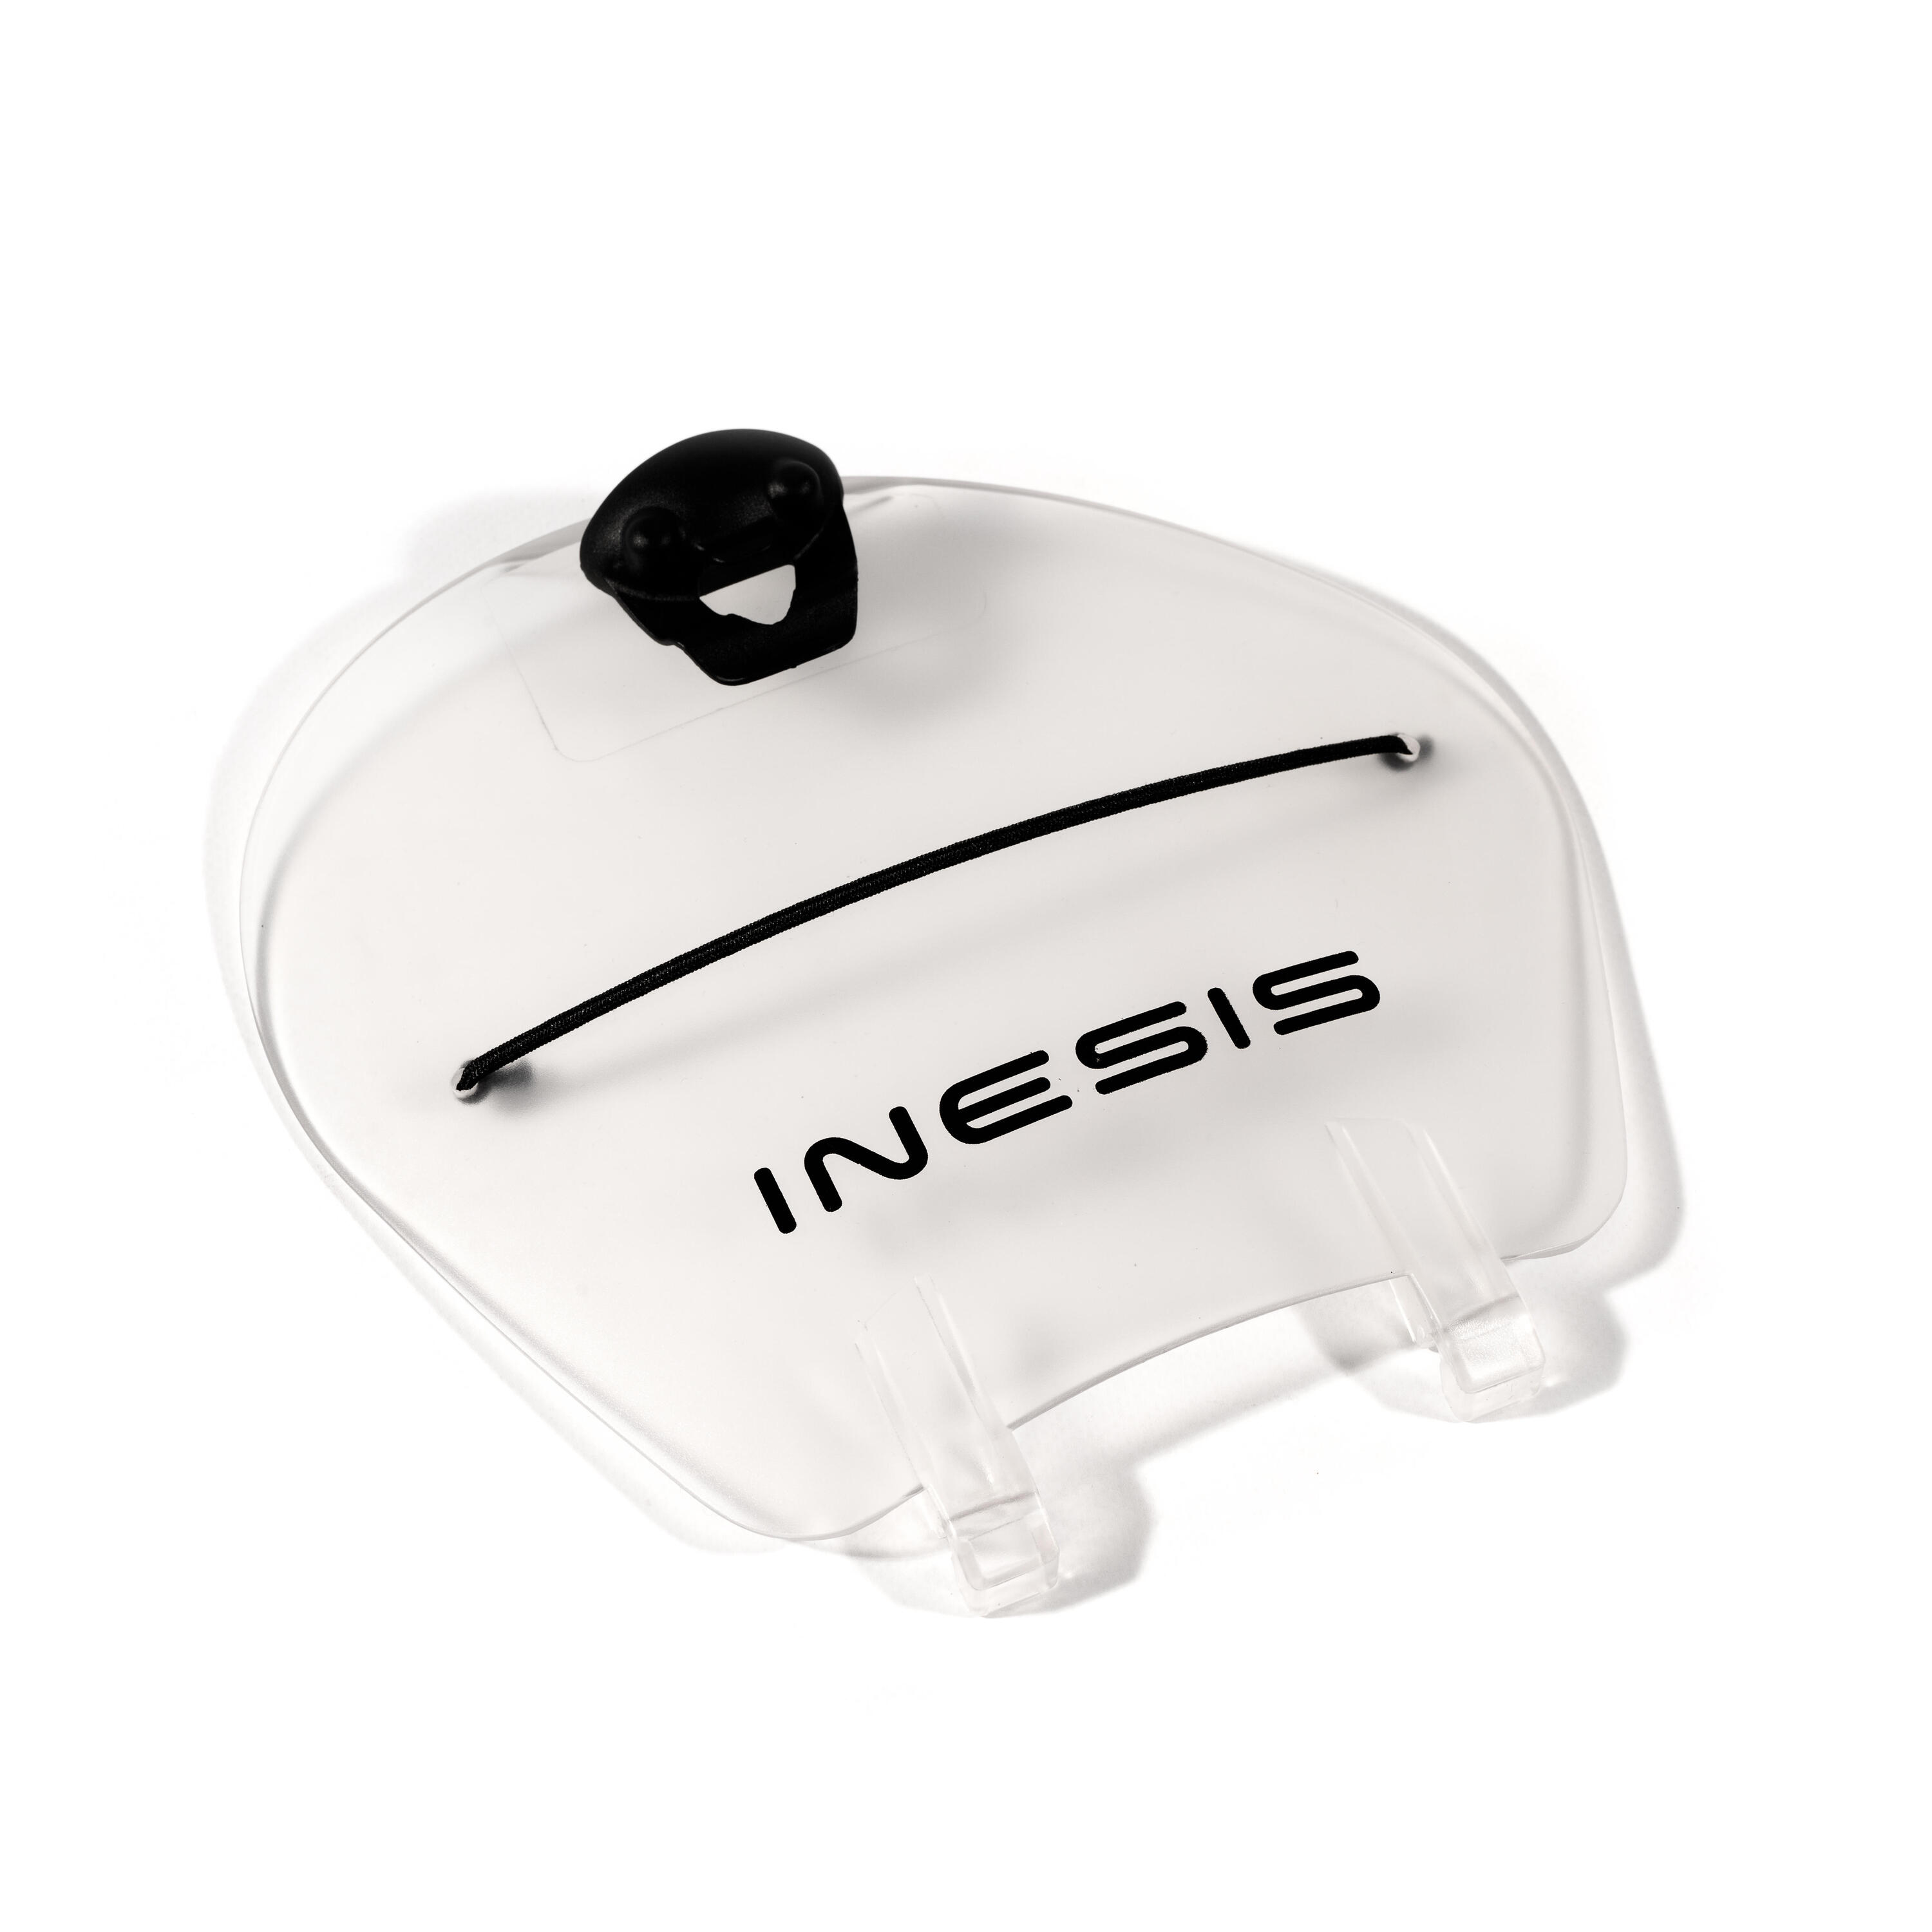 ключ для тележки Крышка консоли тележки для гольфа для трехколесной тележки INESIS